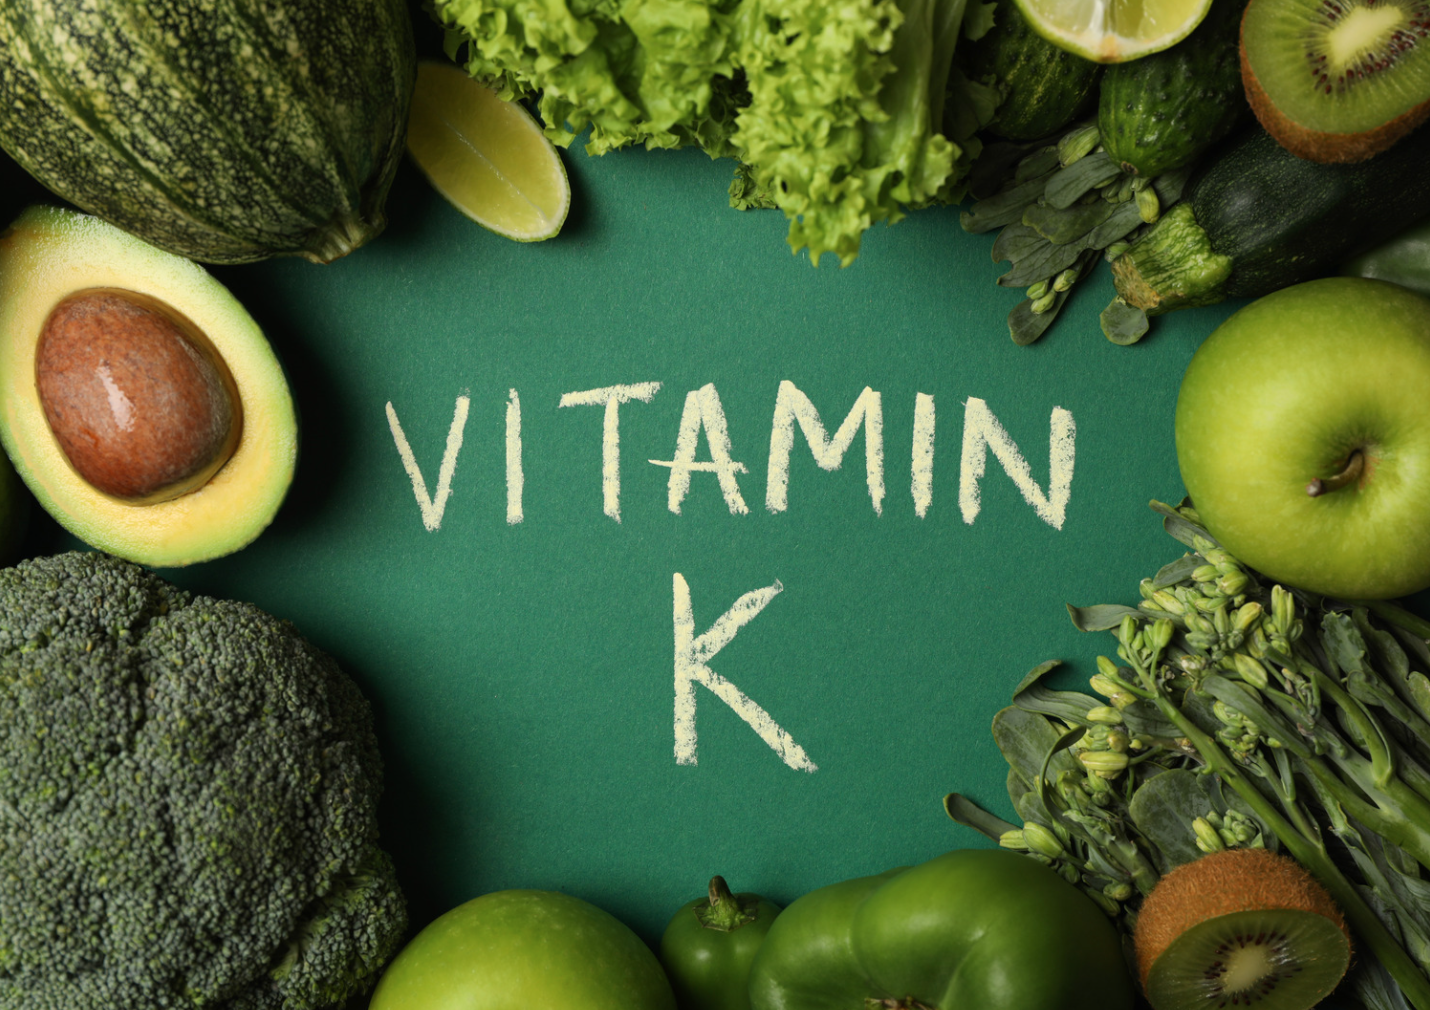 Vitamina K2. Saps com d'important és per a l'organisme?